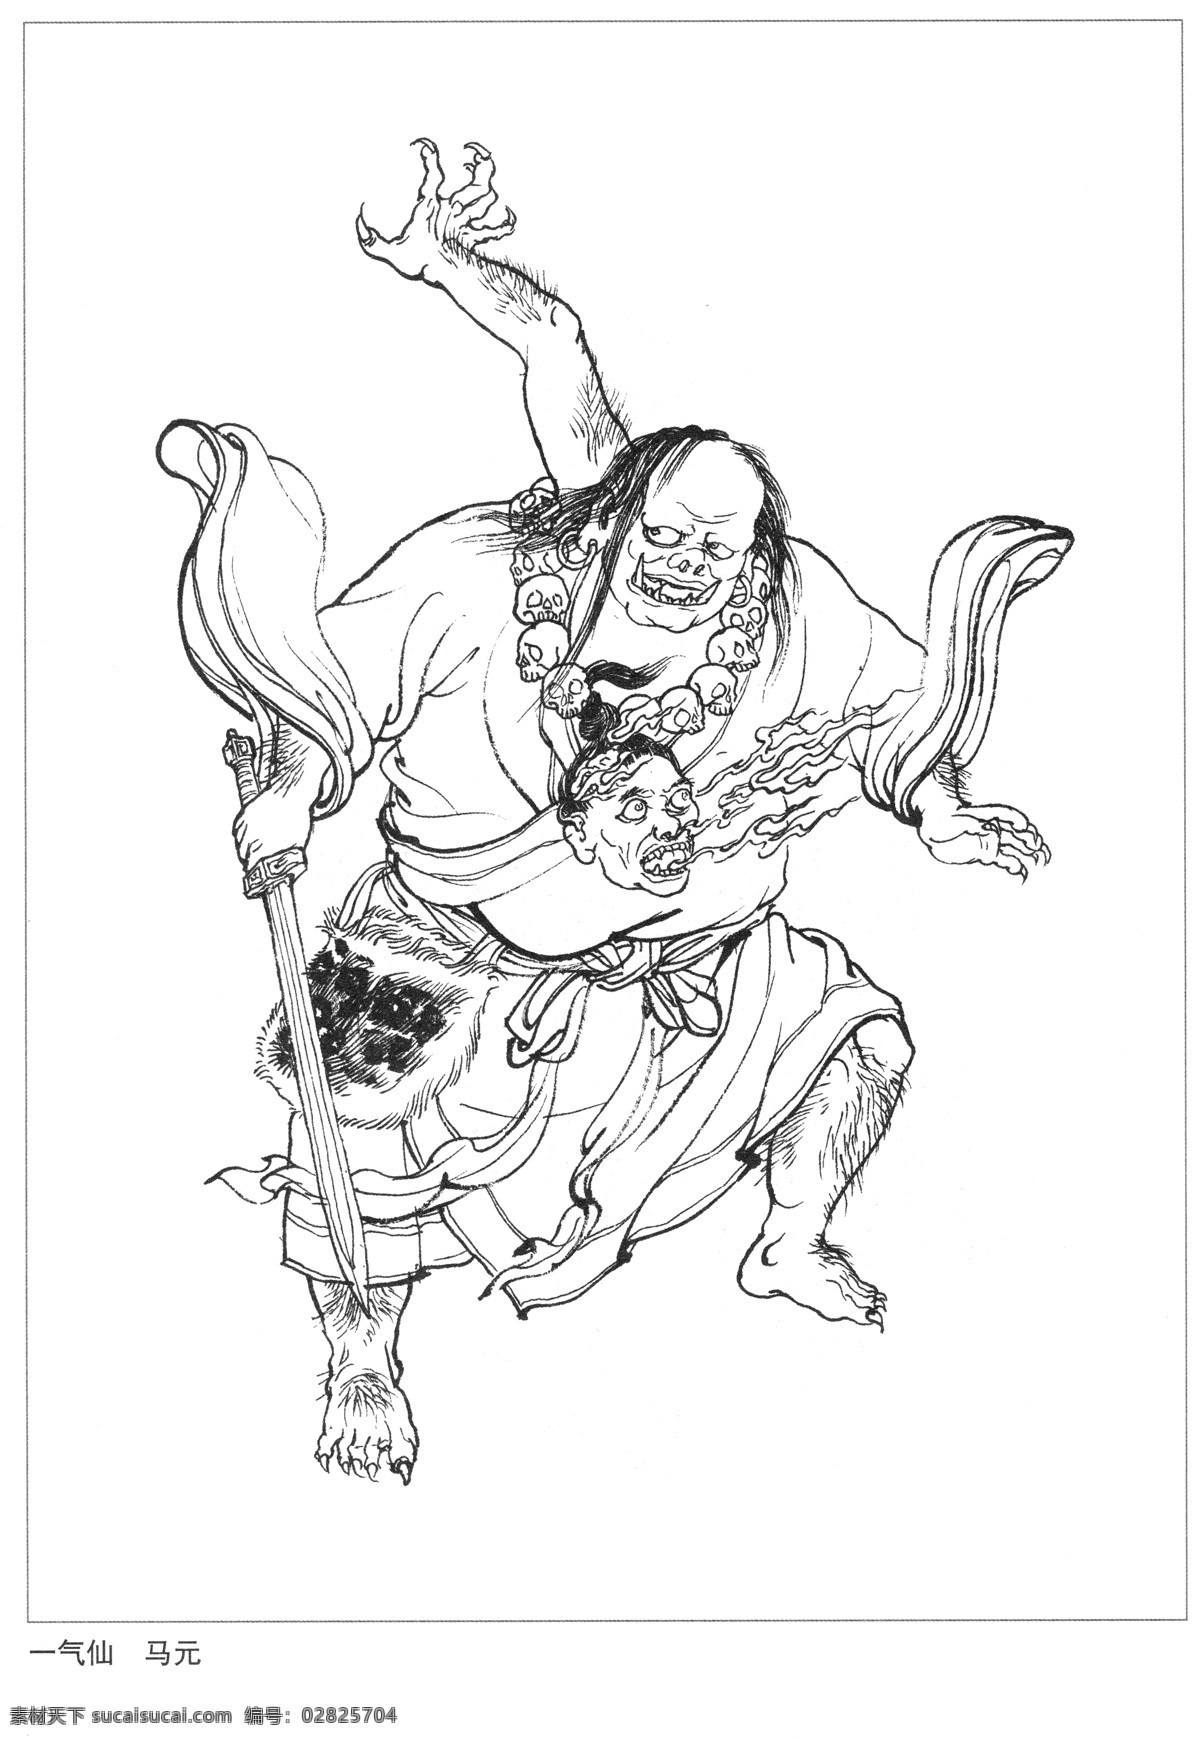 一气仙 马元 封神演义 古代 神仙 白描 人物 图 文化艺术 传统文化